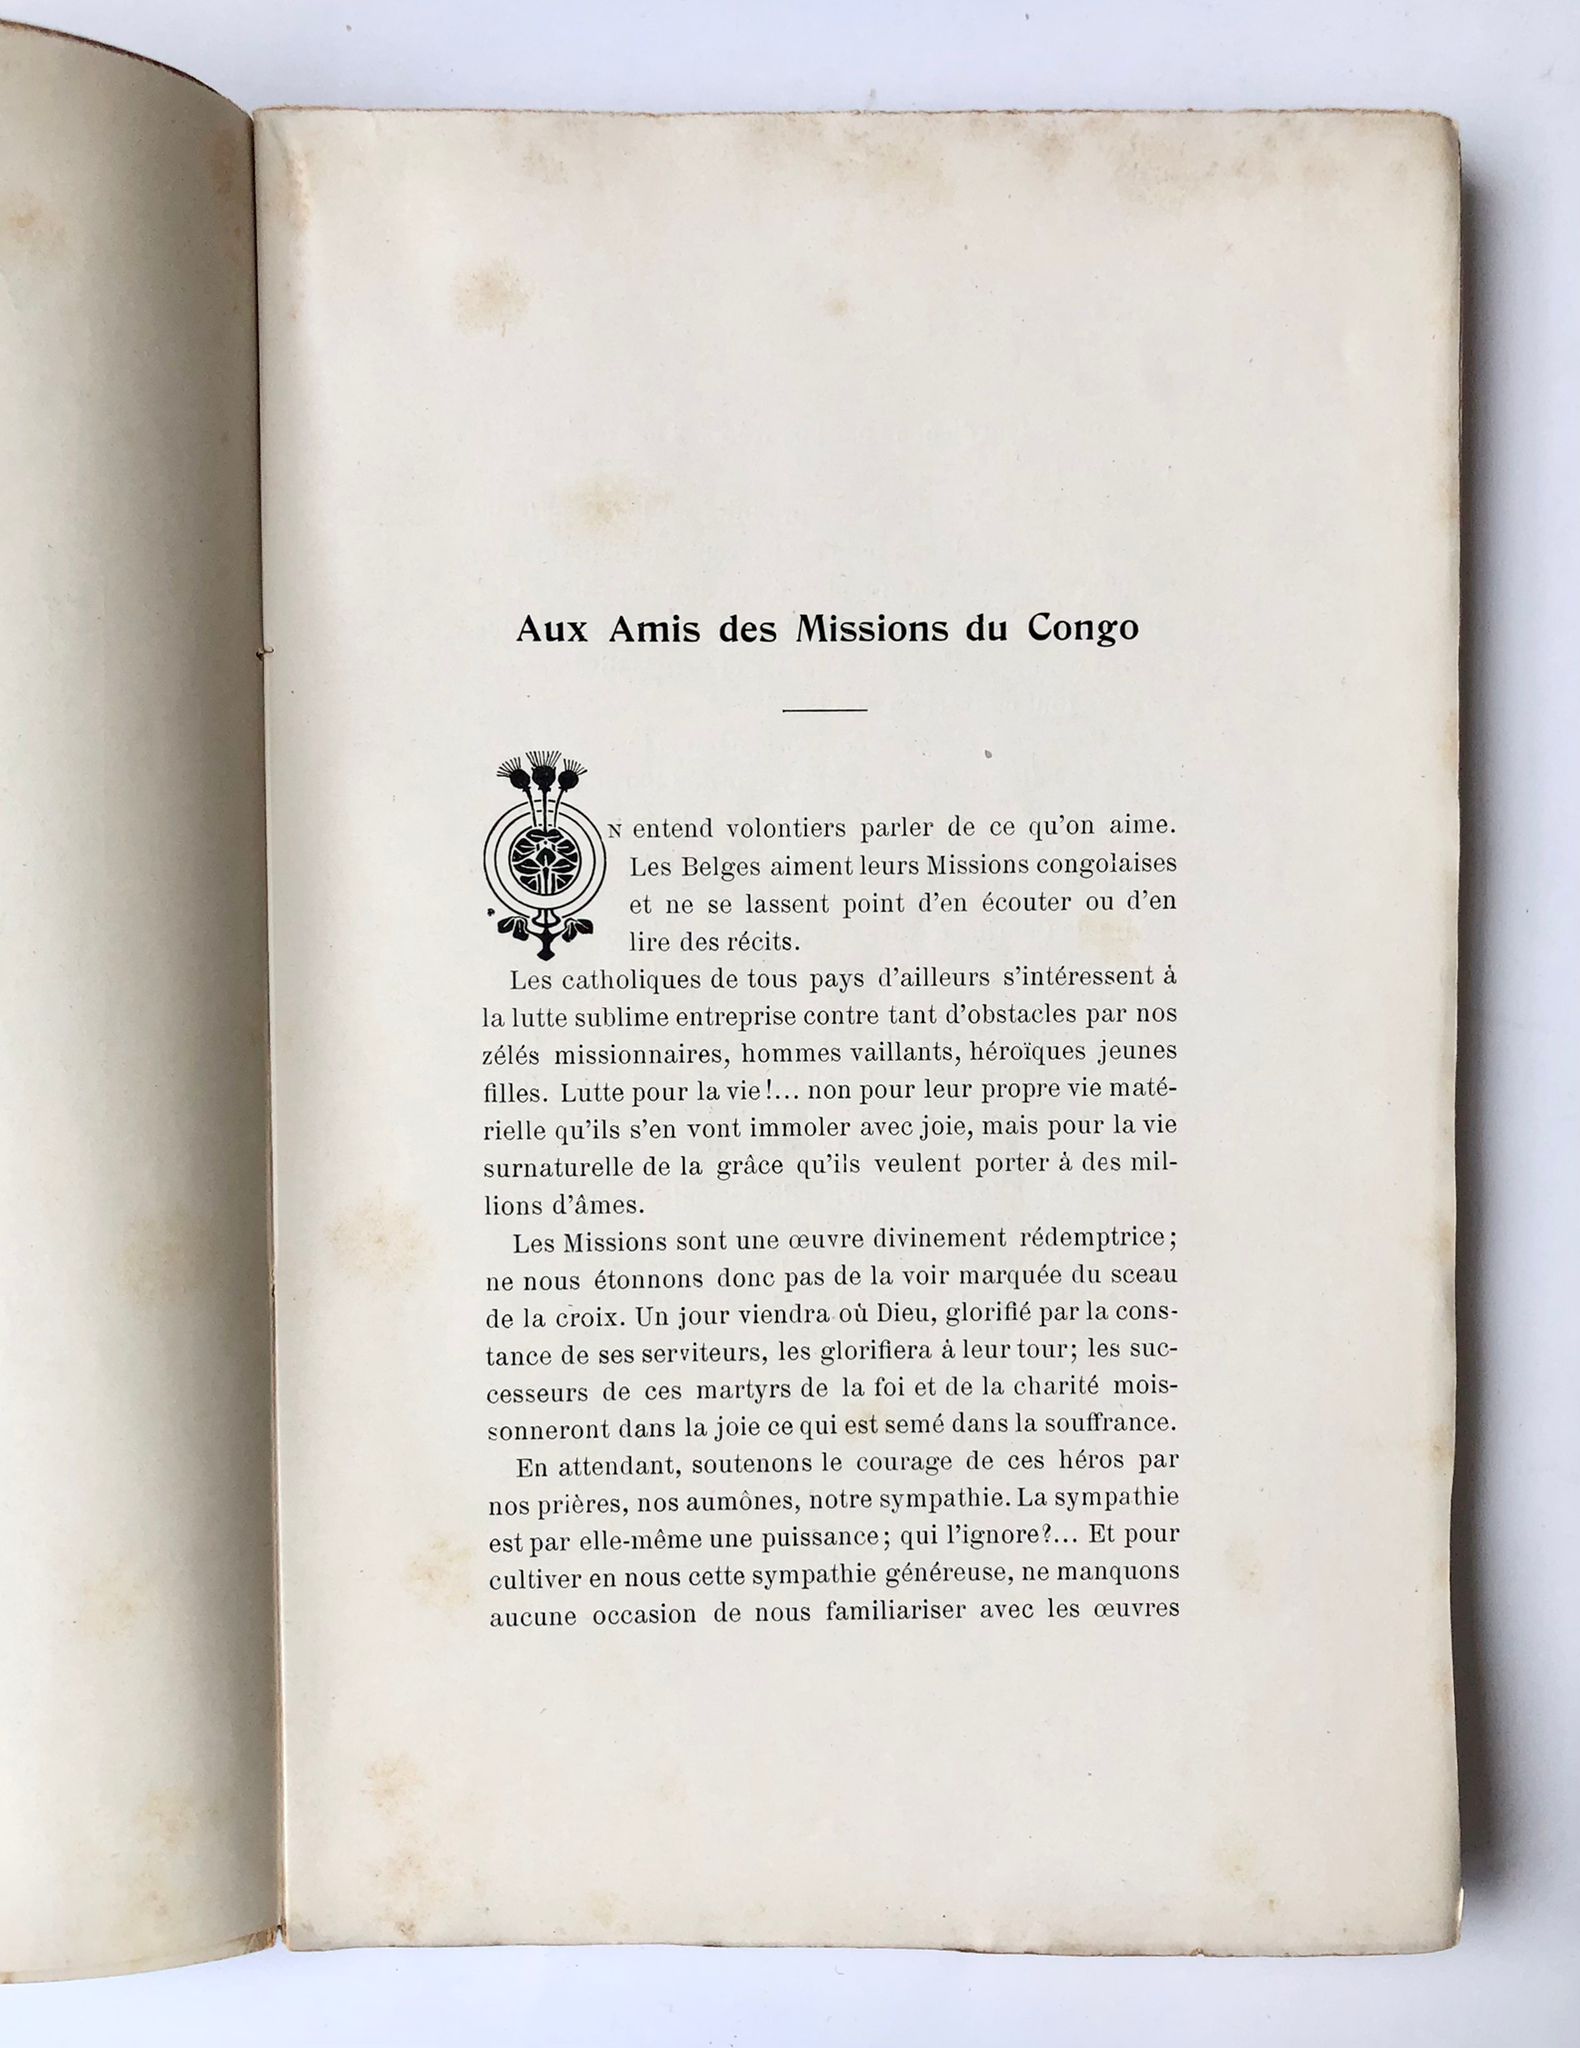 [Afrika, 1905] Voyage au Congo, 1904-1905, Lettres d’une Sœur de Charité de Gand, Charles Bulens, Bruxelles, 1905, 174 pp.